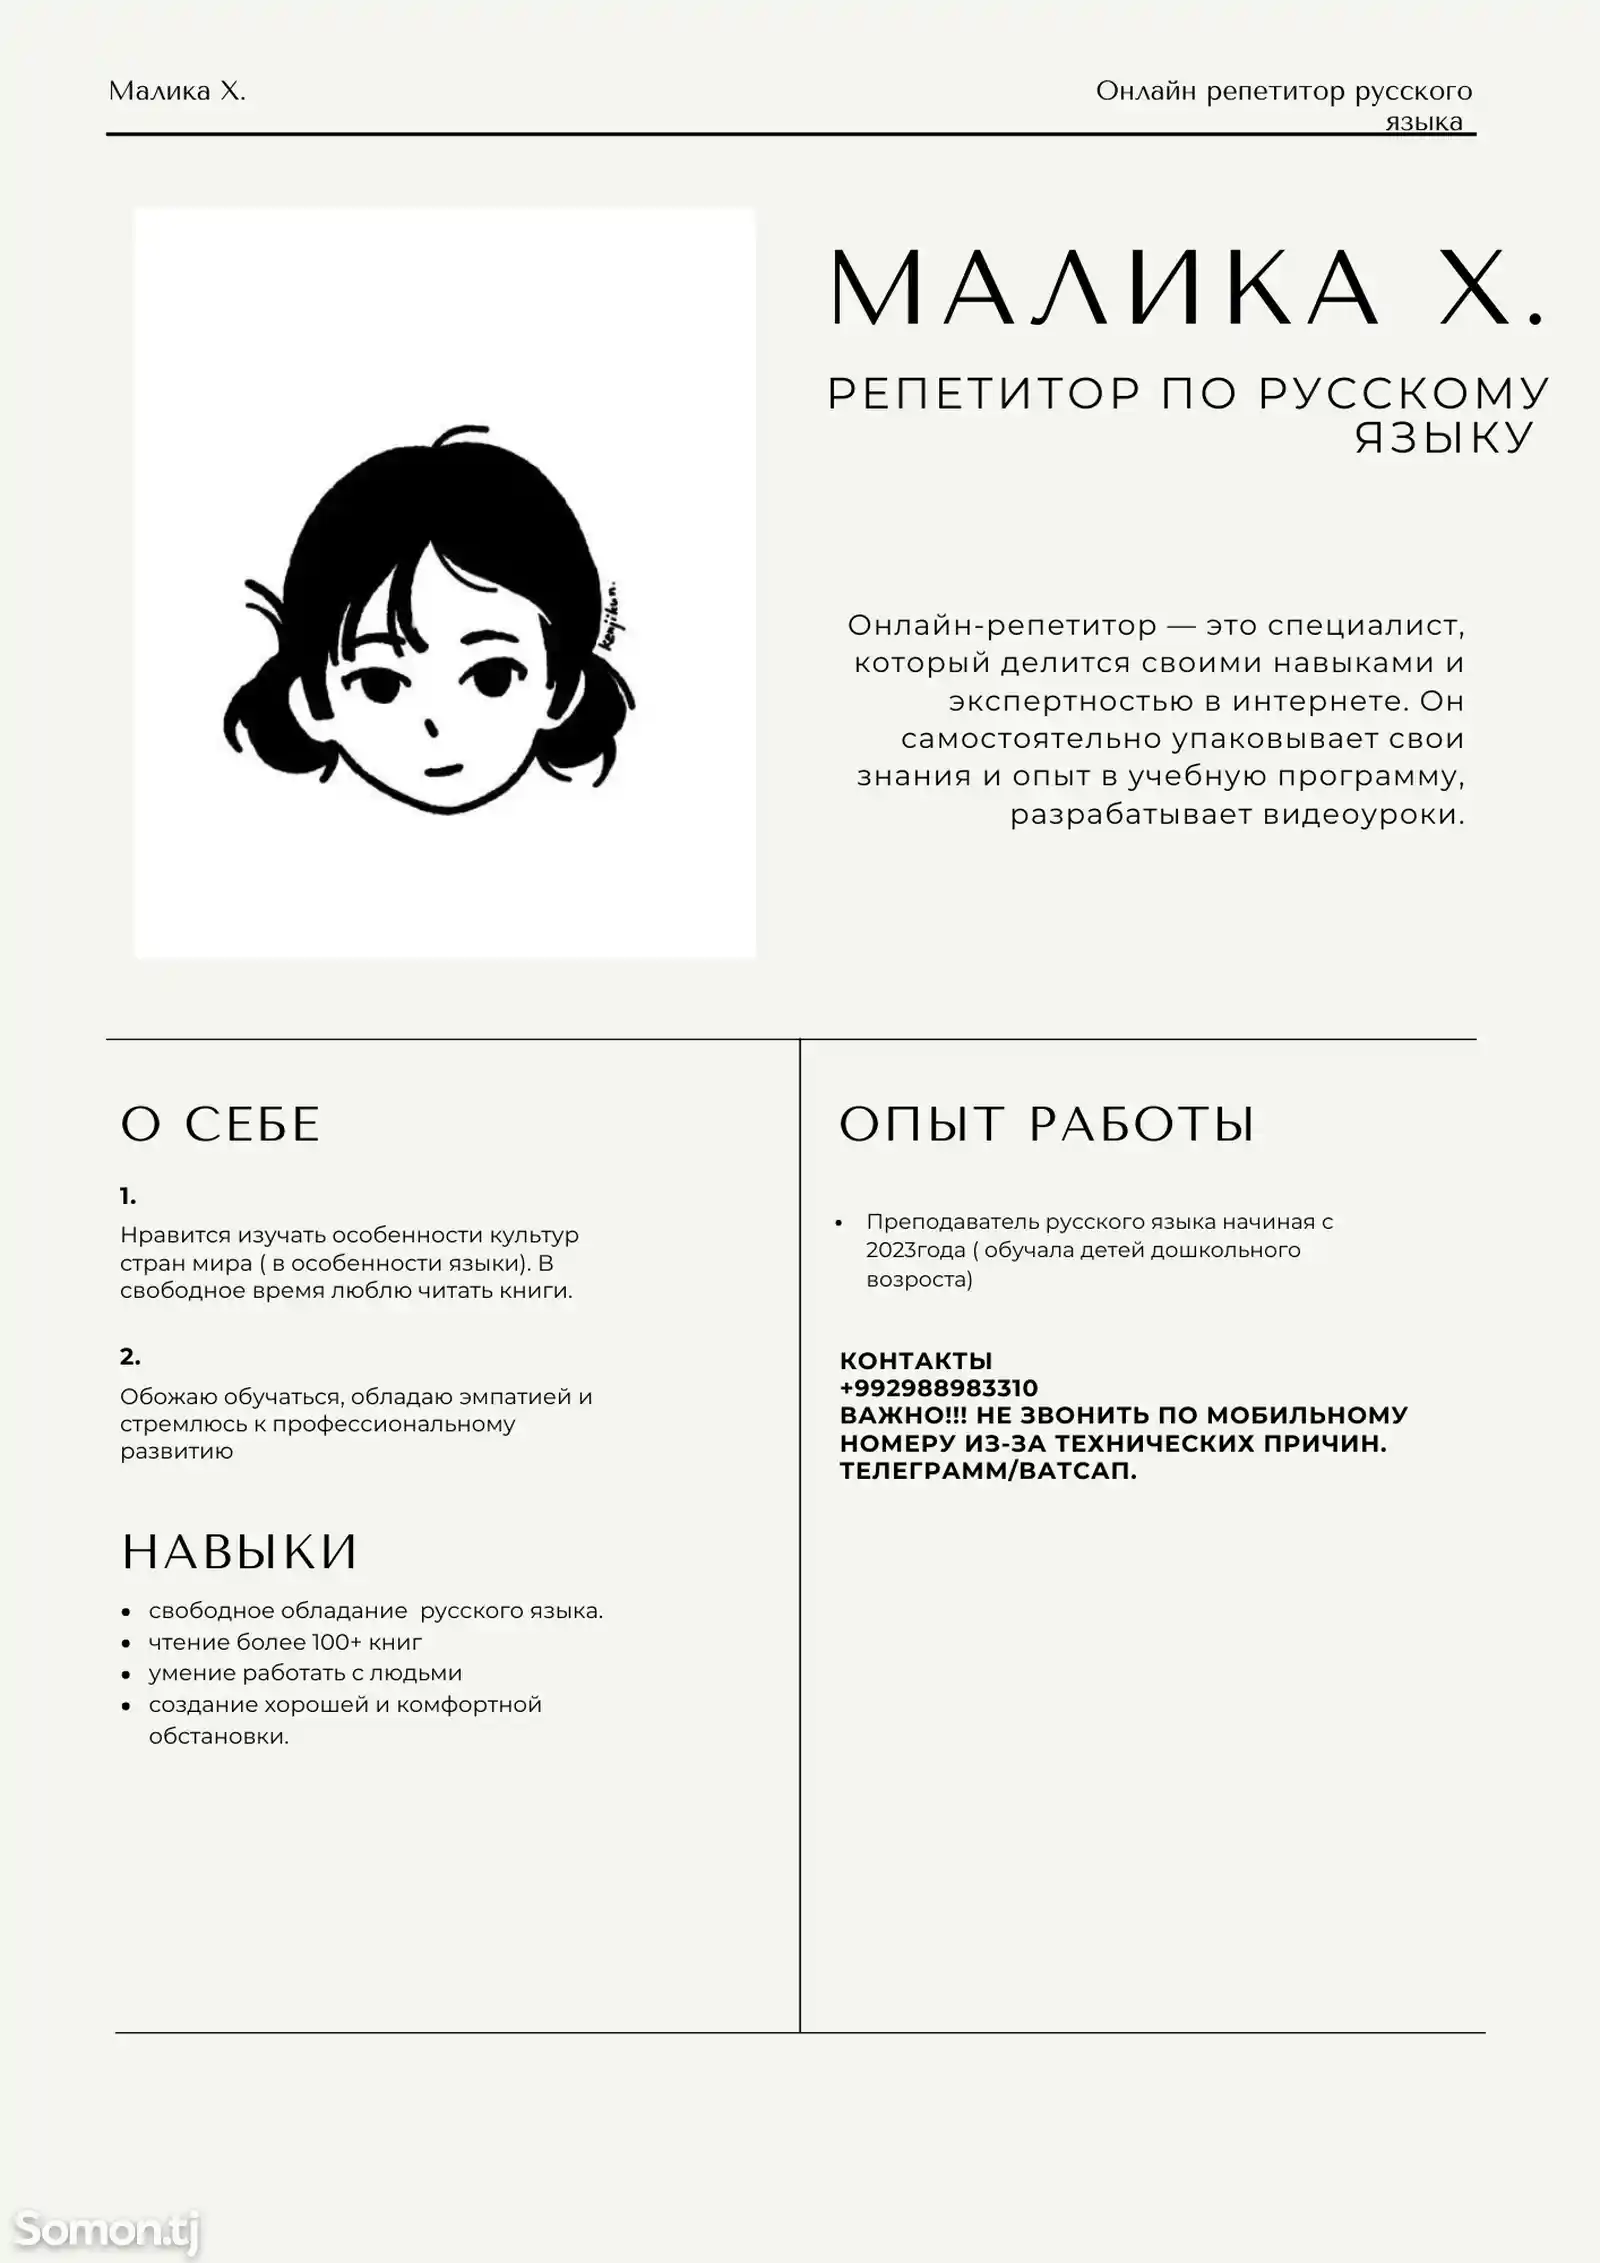 Репетитор по русскому языку-1